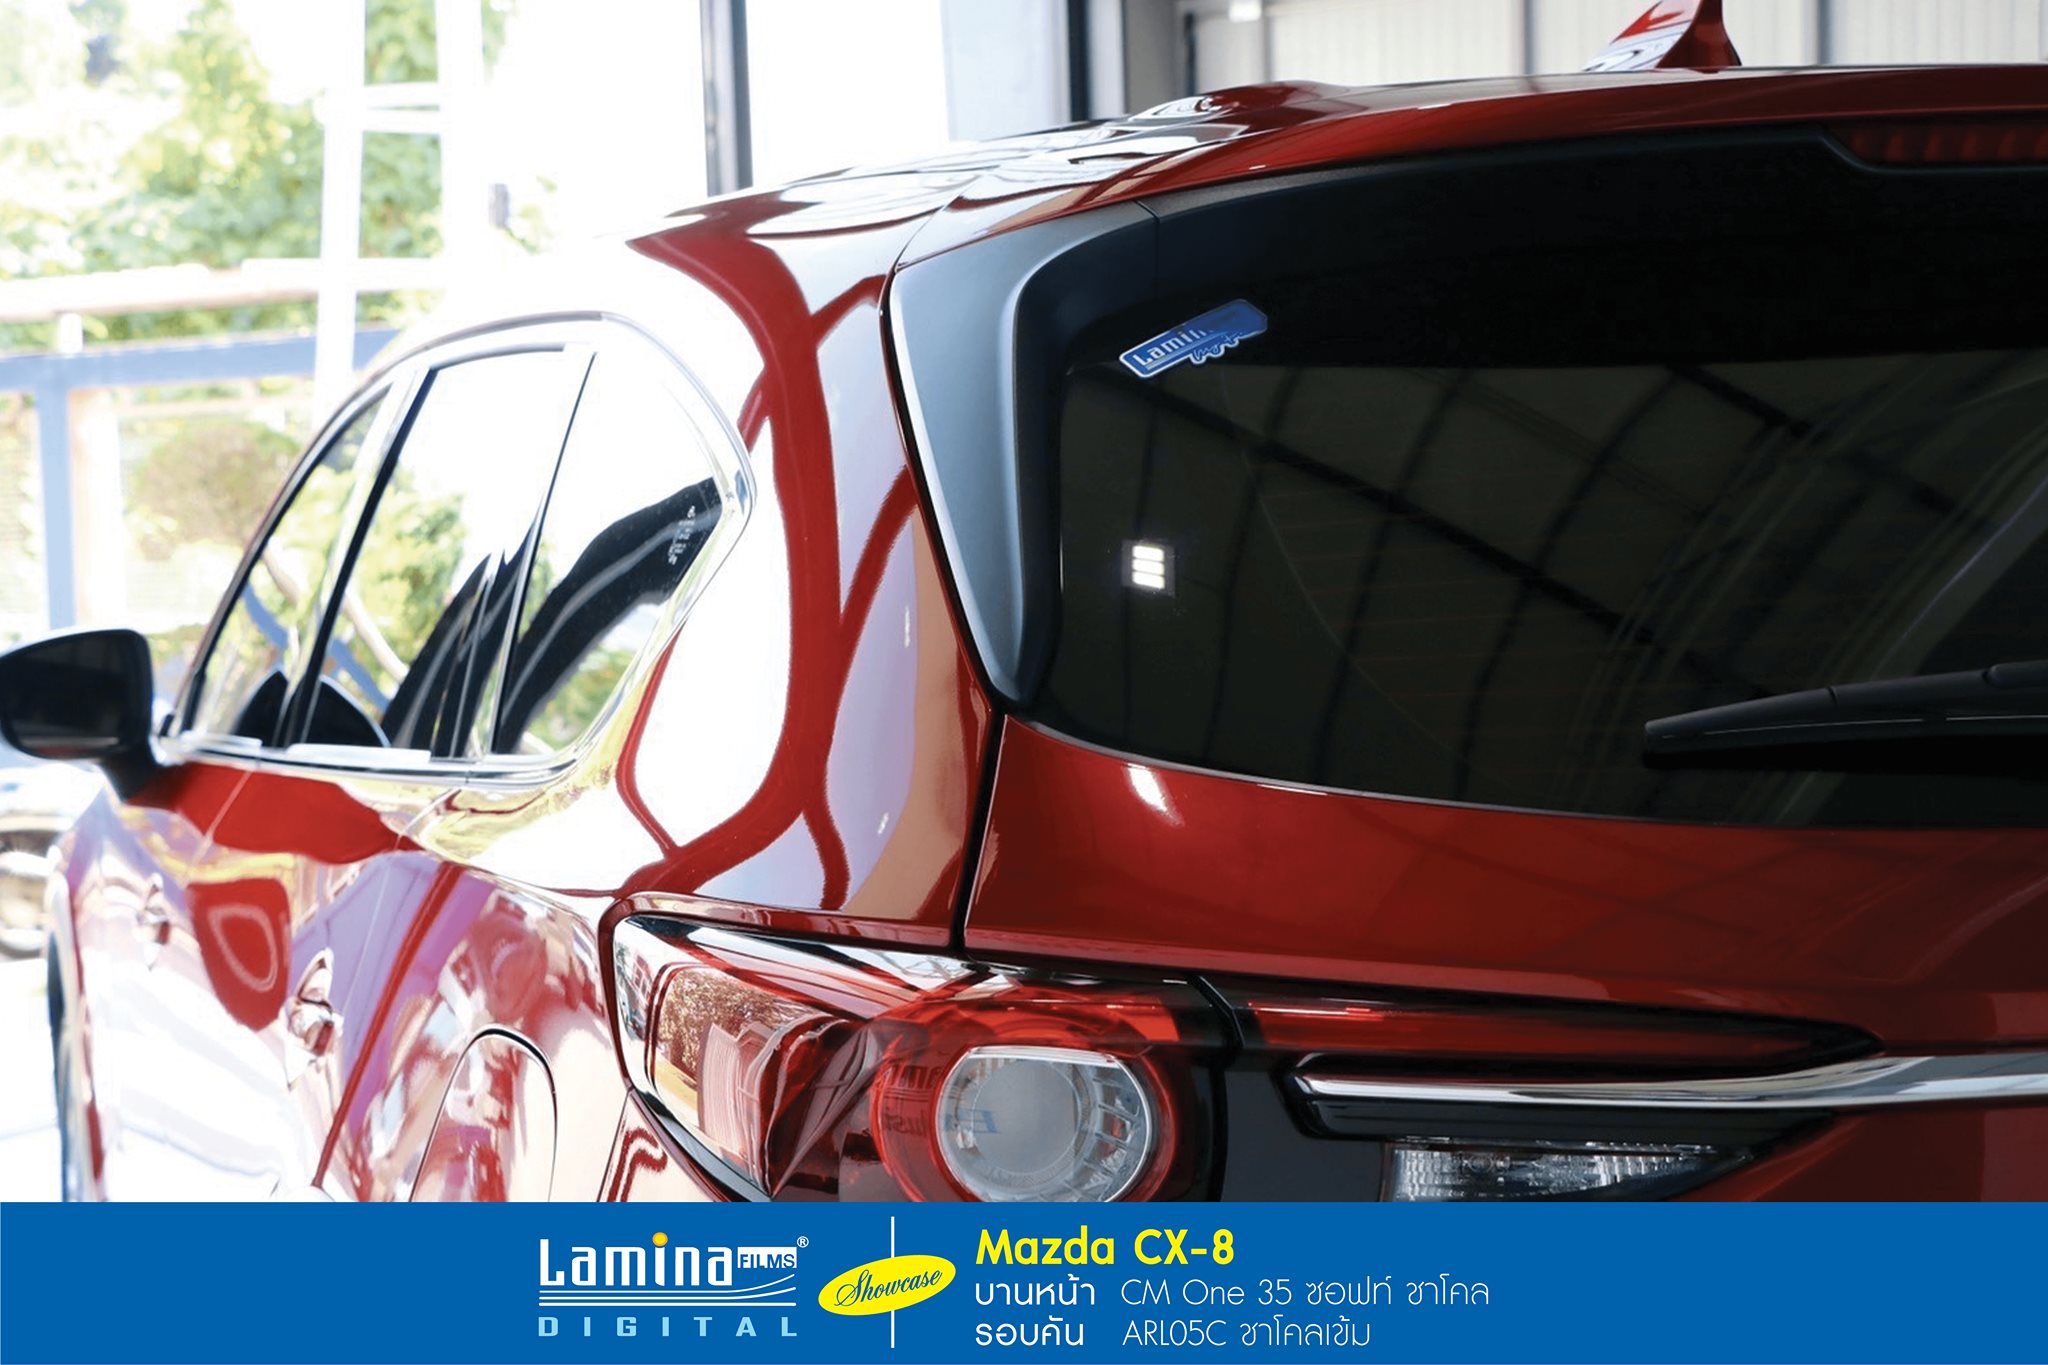 ฟิล์มเซรามิค lamina cm one Mazda CX-8 5